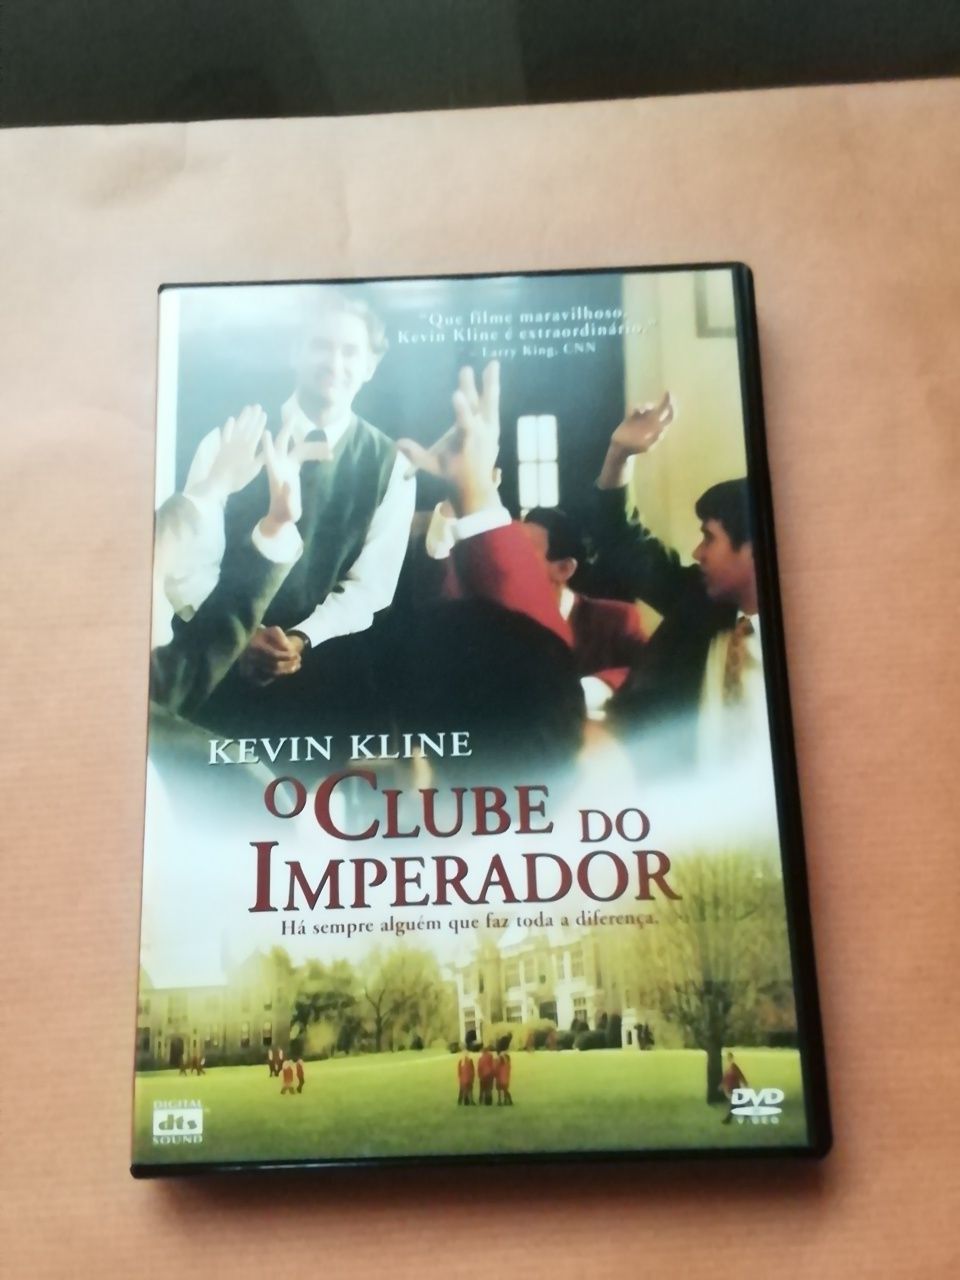 DVD O clube do imperador, novo